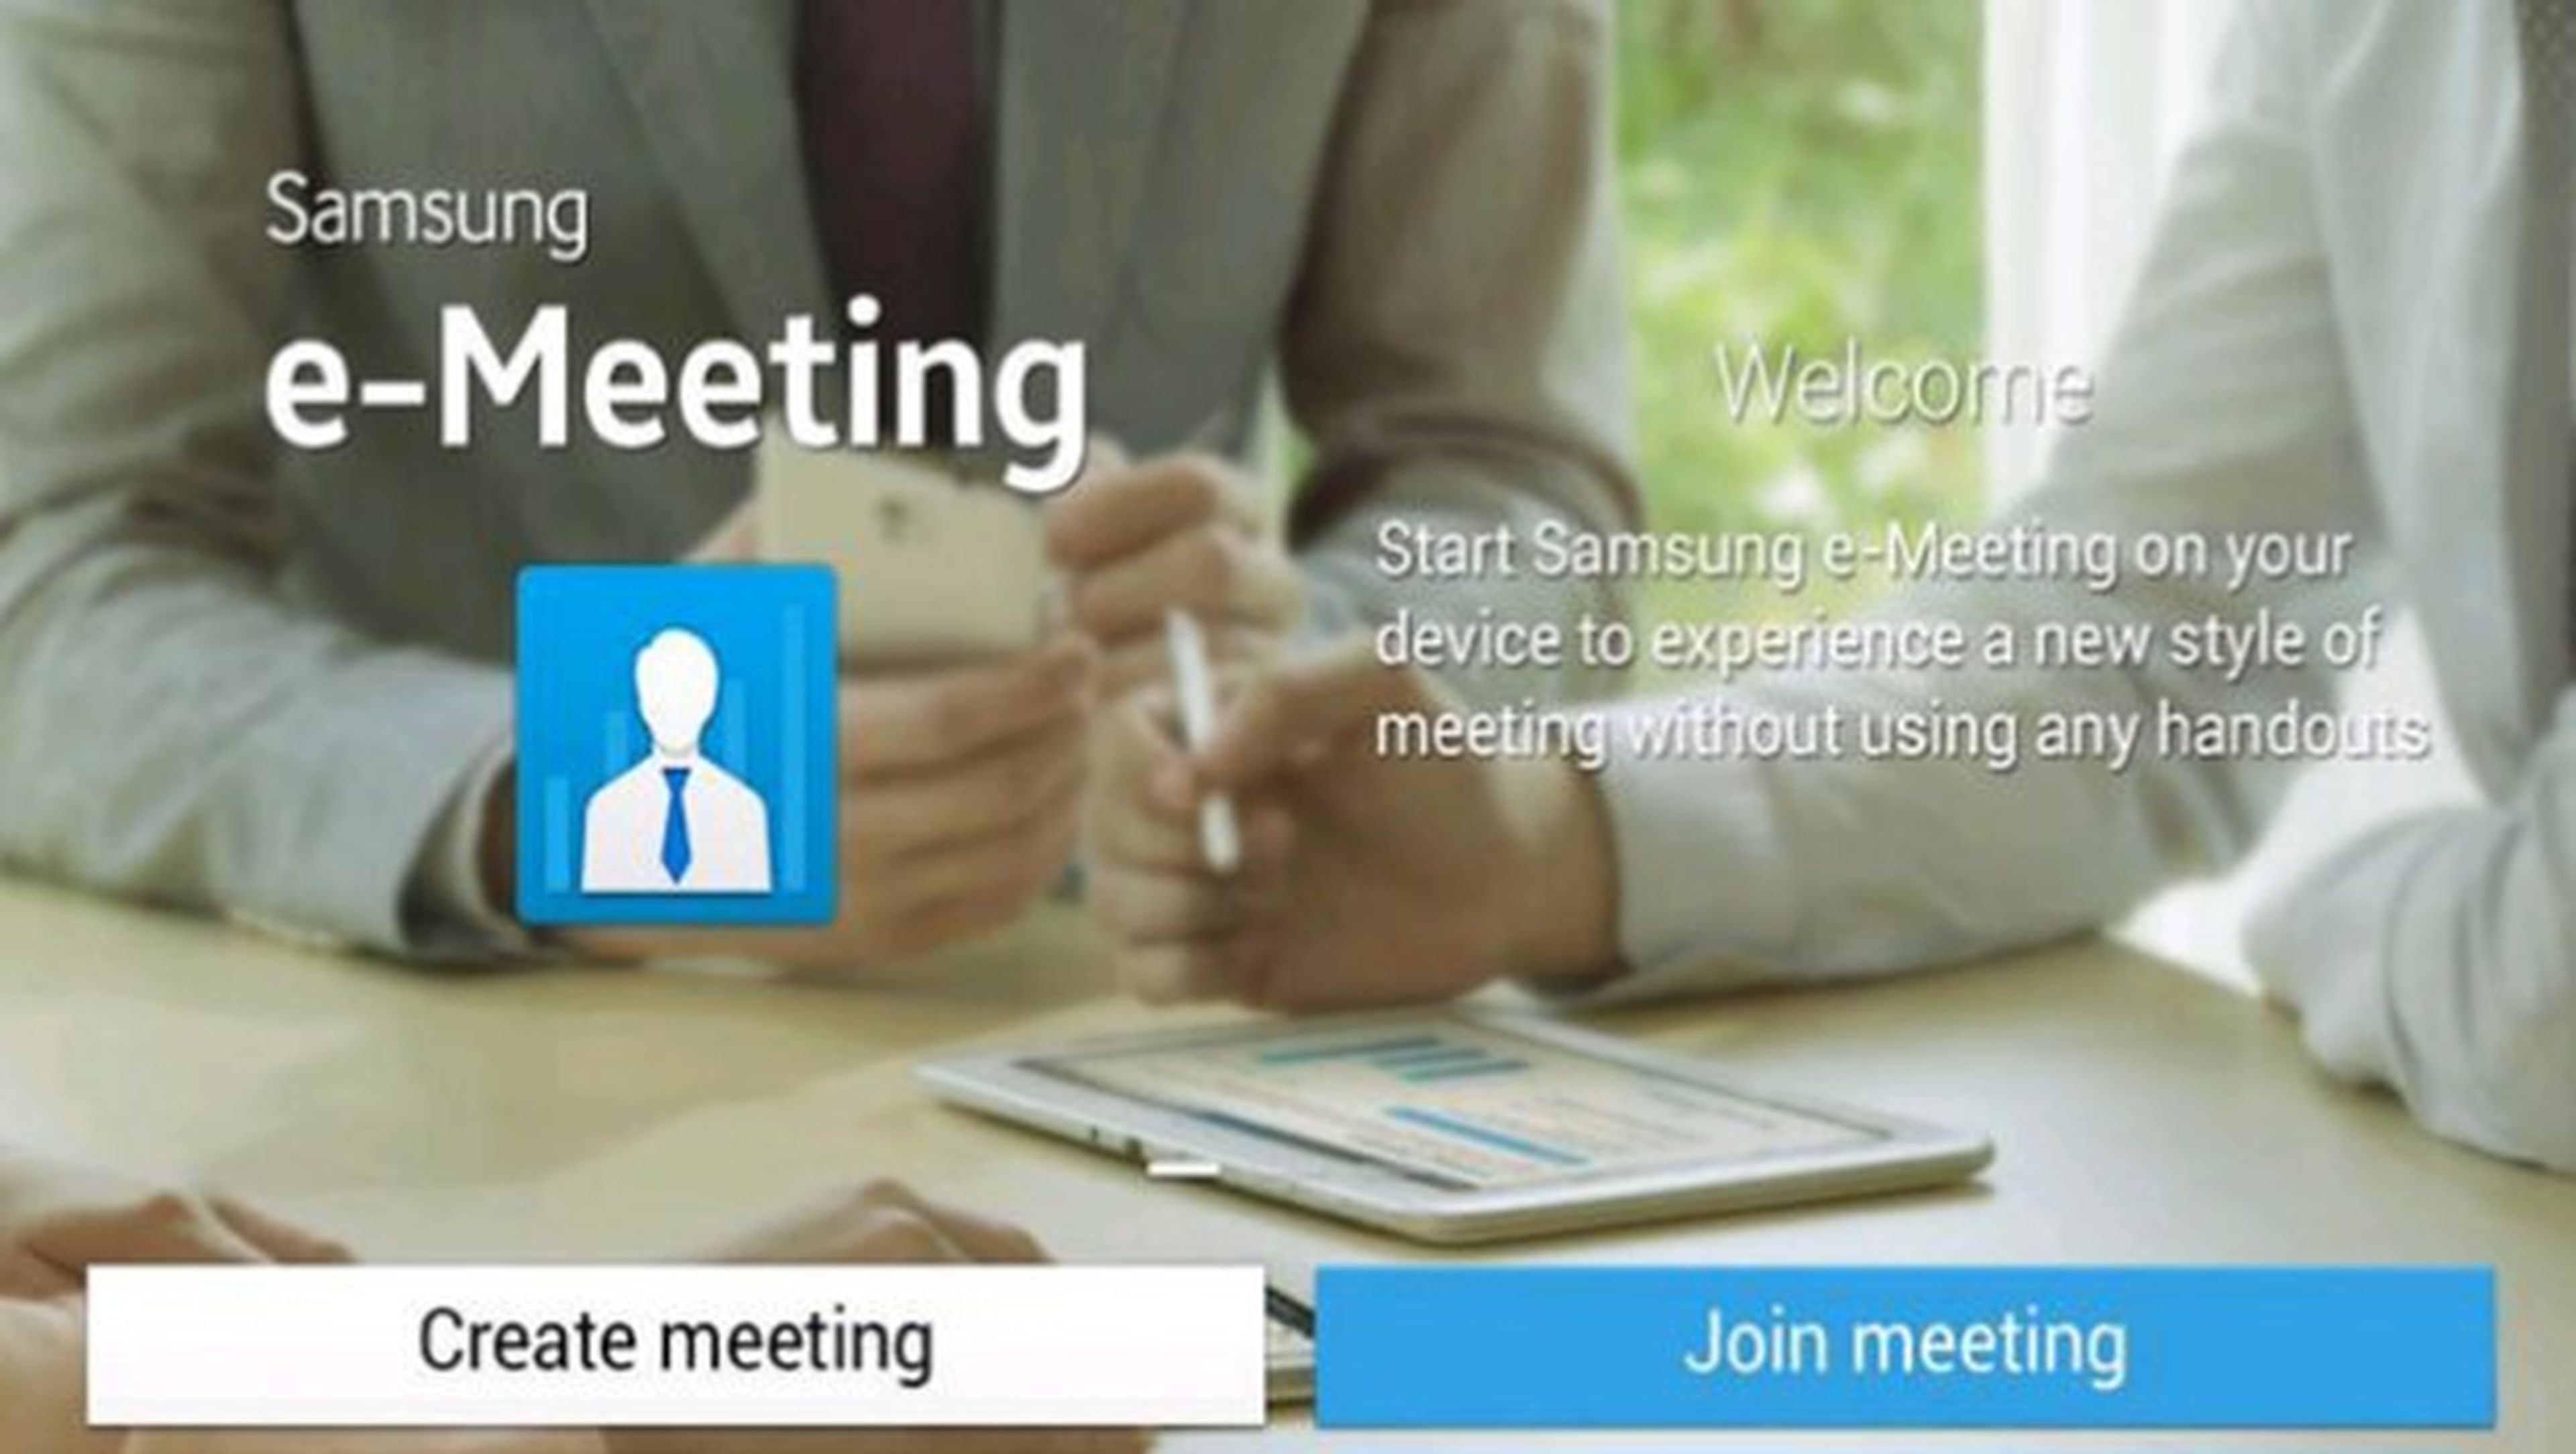 e-meeting